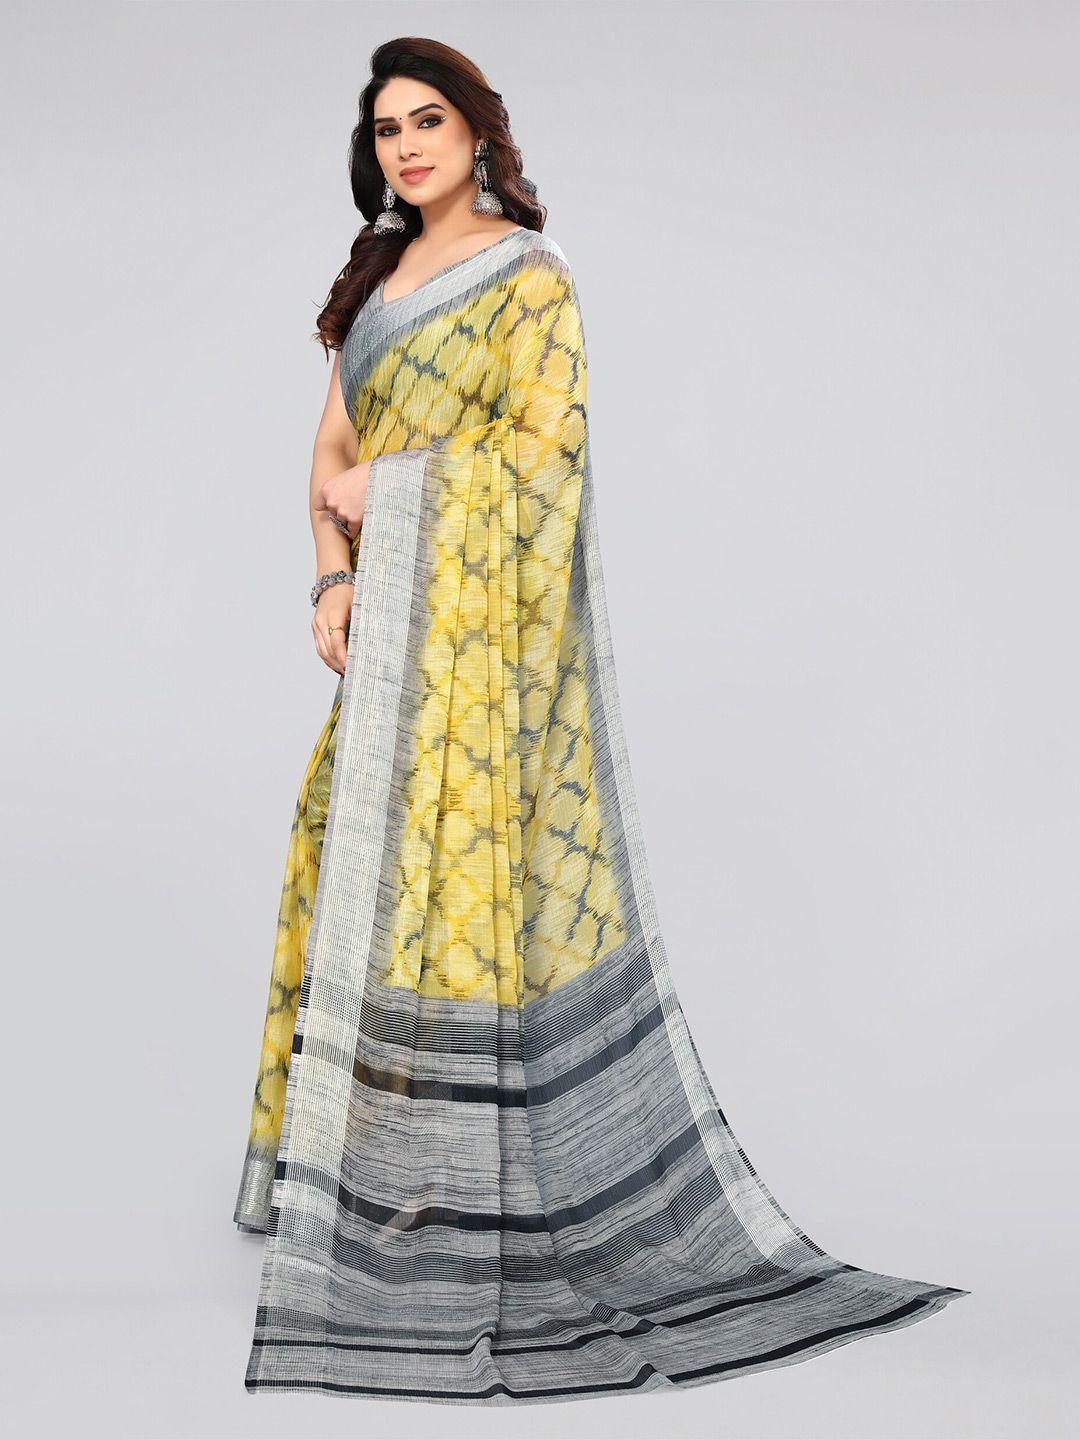 mirchi fashion yellow & silver-toned ikat printed saree